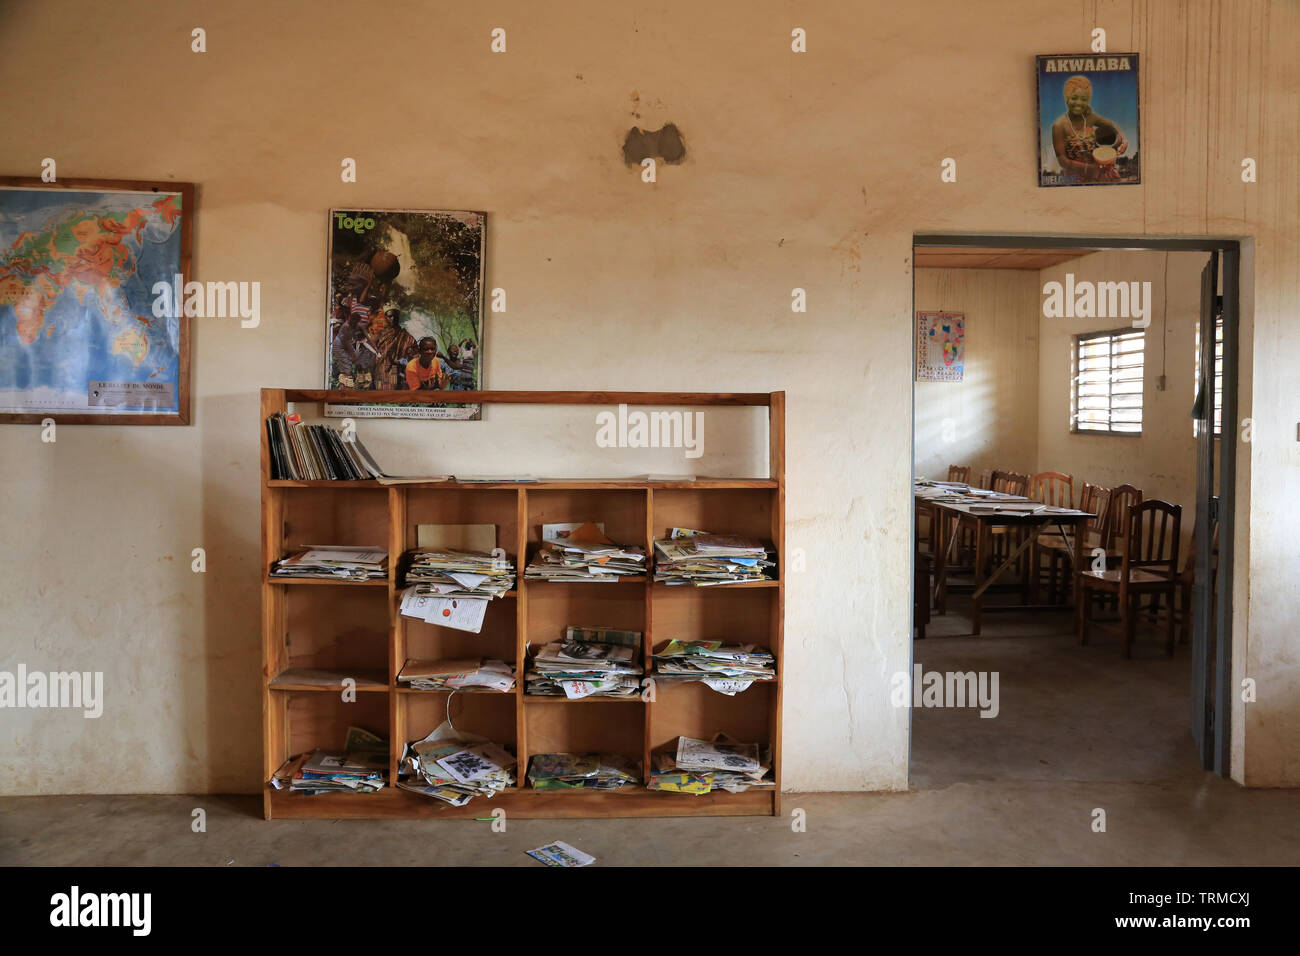 Bibliothèque. Ecole primaire d'Adjallé. La convenzione di Lomé. Il Togo. Afrique de l'Ouest. Foto Stock